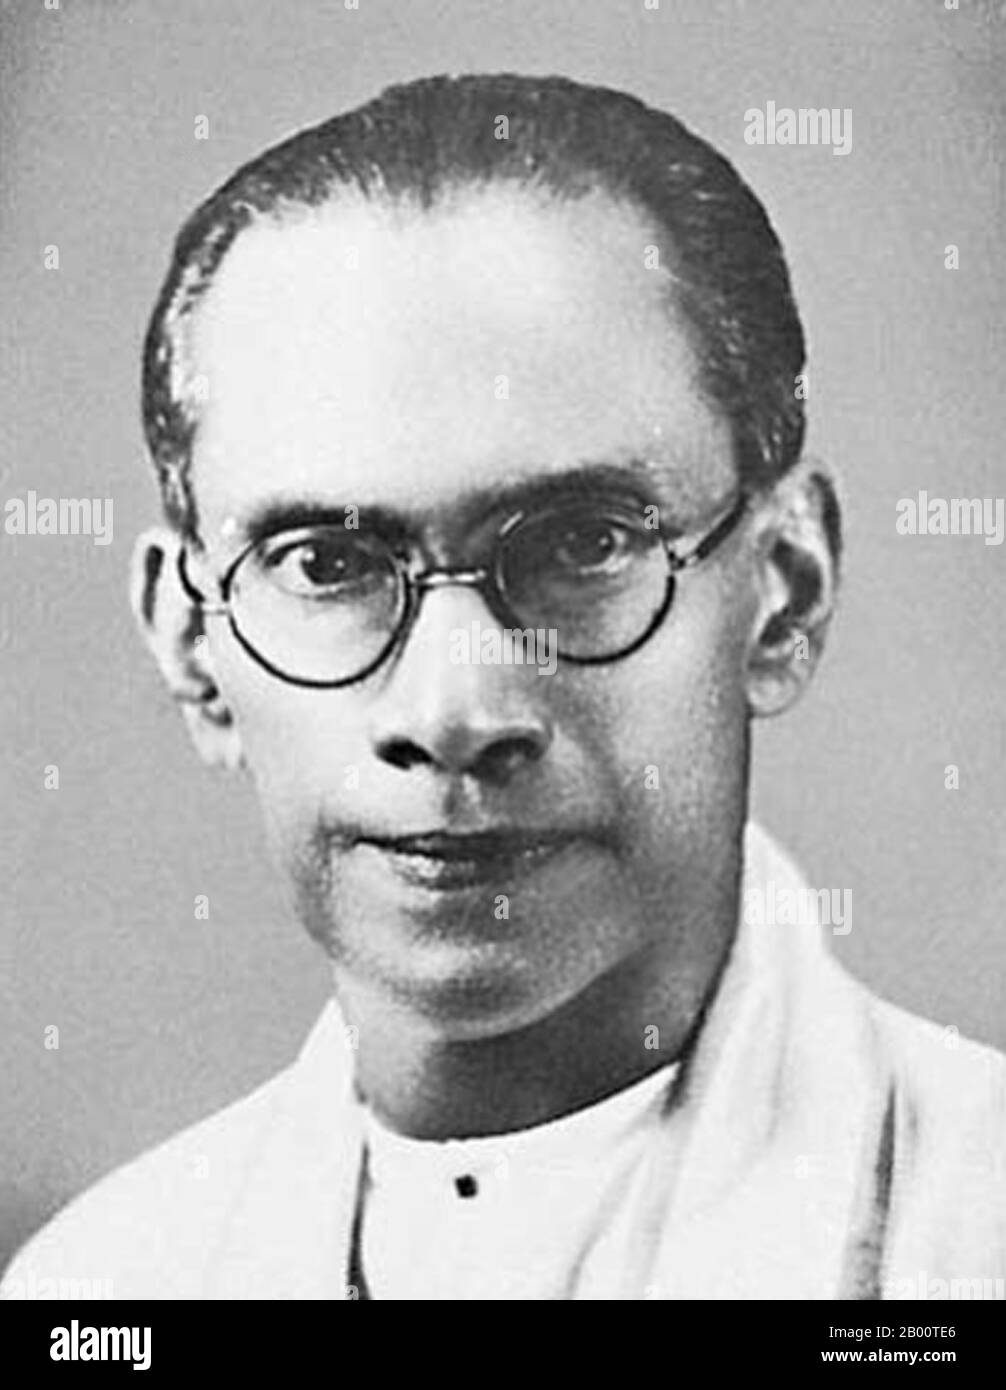 Sri Lanka: S.W.R.D. Bandaranaike (1899-1959), Premier ministre de Ceylan (1956-1959). S.W.R.D. (Solomon West Ridgeway Dias) Bandaranaike (8 janvier 1899—26 septembre 1959) était le quatrième Premier Ministre de Ceylan (plus tard Sri Lanka), en service de 1956 jusqu'à son assassinat en 1959. Son assassinat par un moine bouddhiste a choqué le monde. Le Sri Lanka est depuis longtemps un pays associé au bouddhisme theravada et à ses principes forts de non-violence. Le 25 septembre 1959, Talduwe Somarama, moine bouddhiste habillé de robes de safran traditionnelles, est arrivé chez Bandaranaike à Colombo et l'a tiré. Banque D'Images